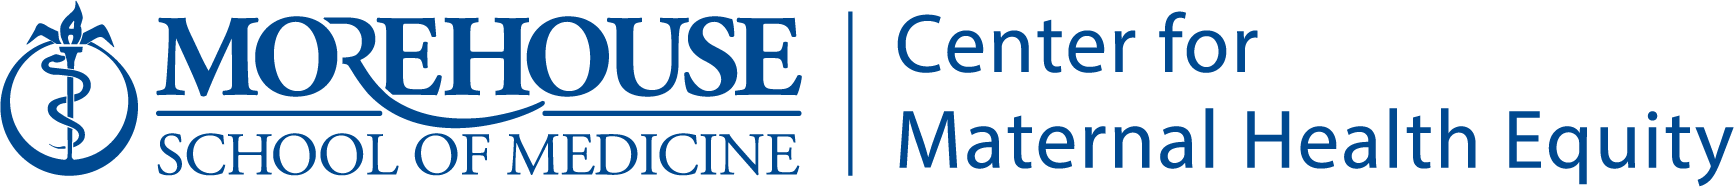 CMHE_Center for Maternal Health Equity Logo_Blue